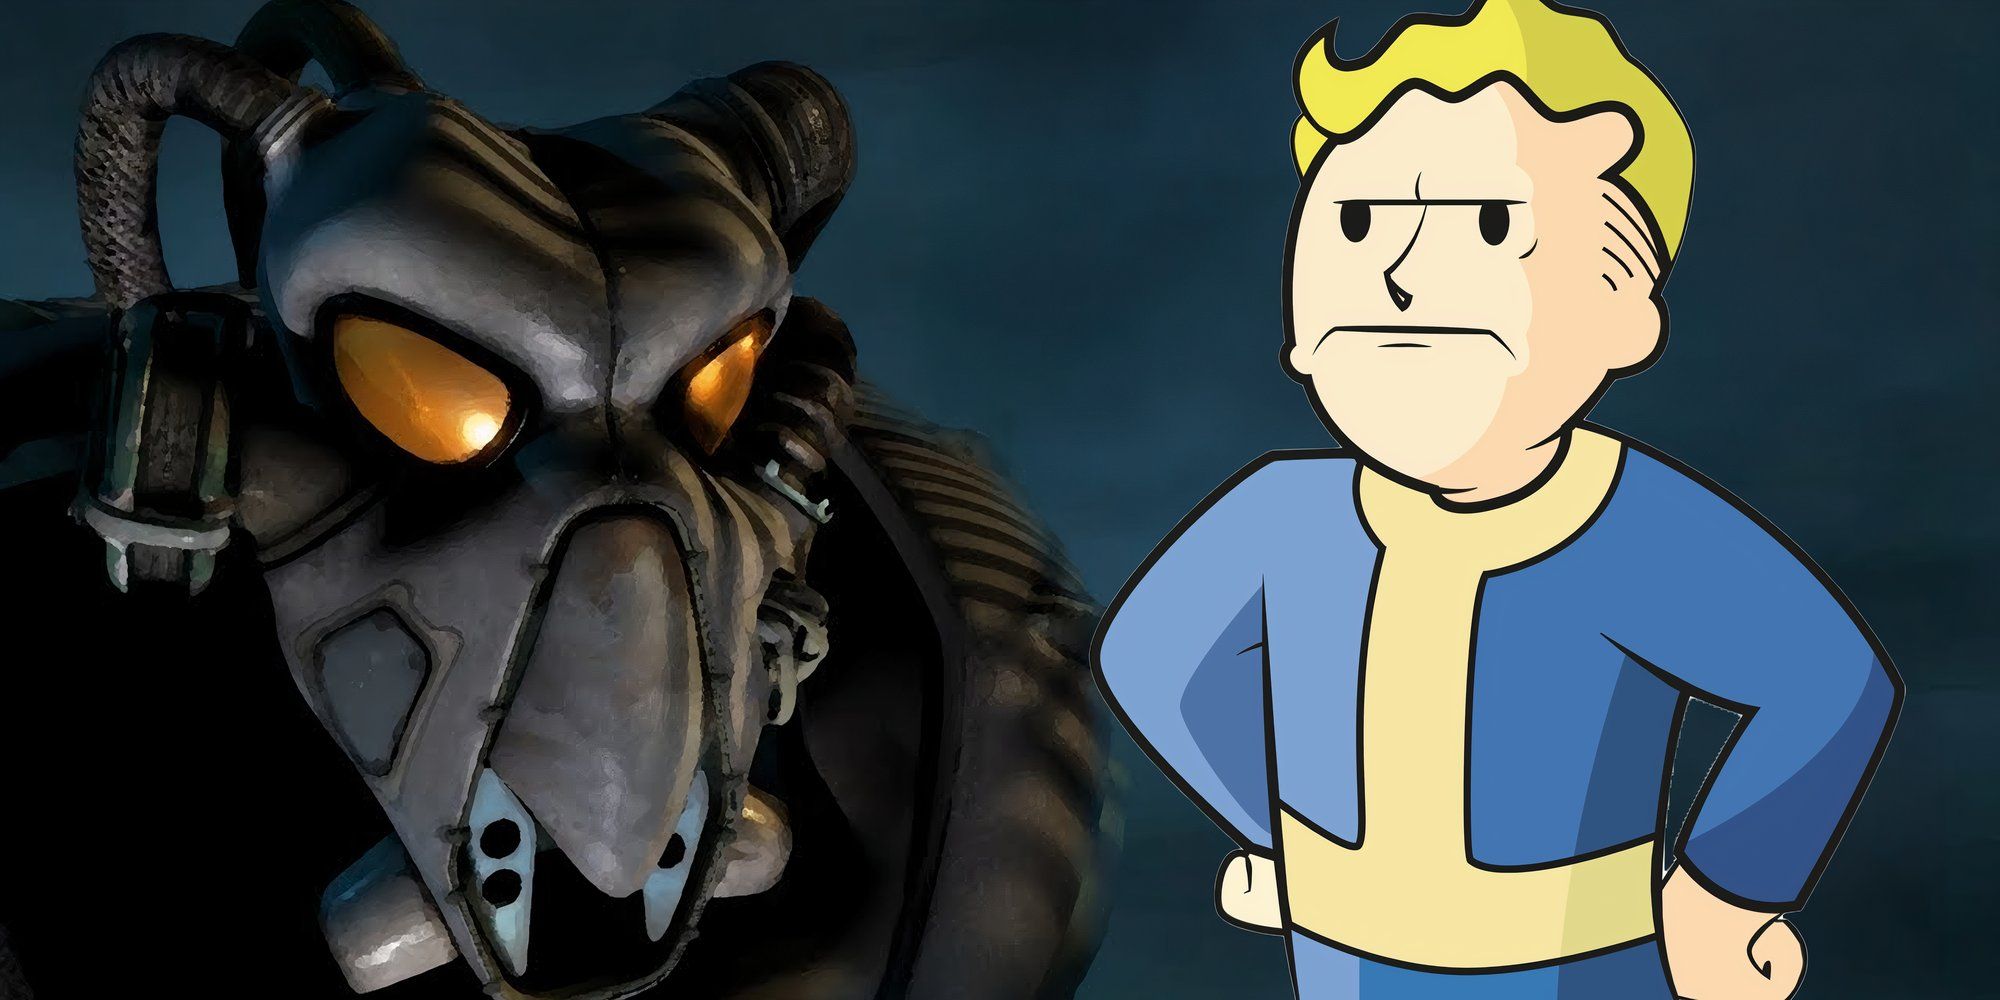 Фанаты Fallout, возвращающиеся к старым играм, встречают одного из худших лидеров Убежищ за всю историю